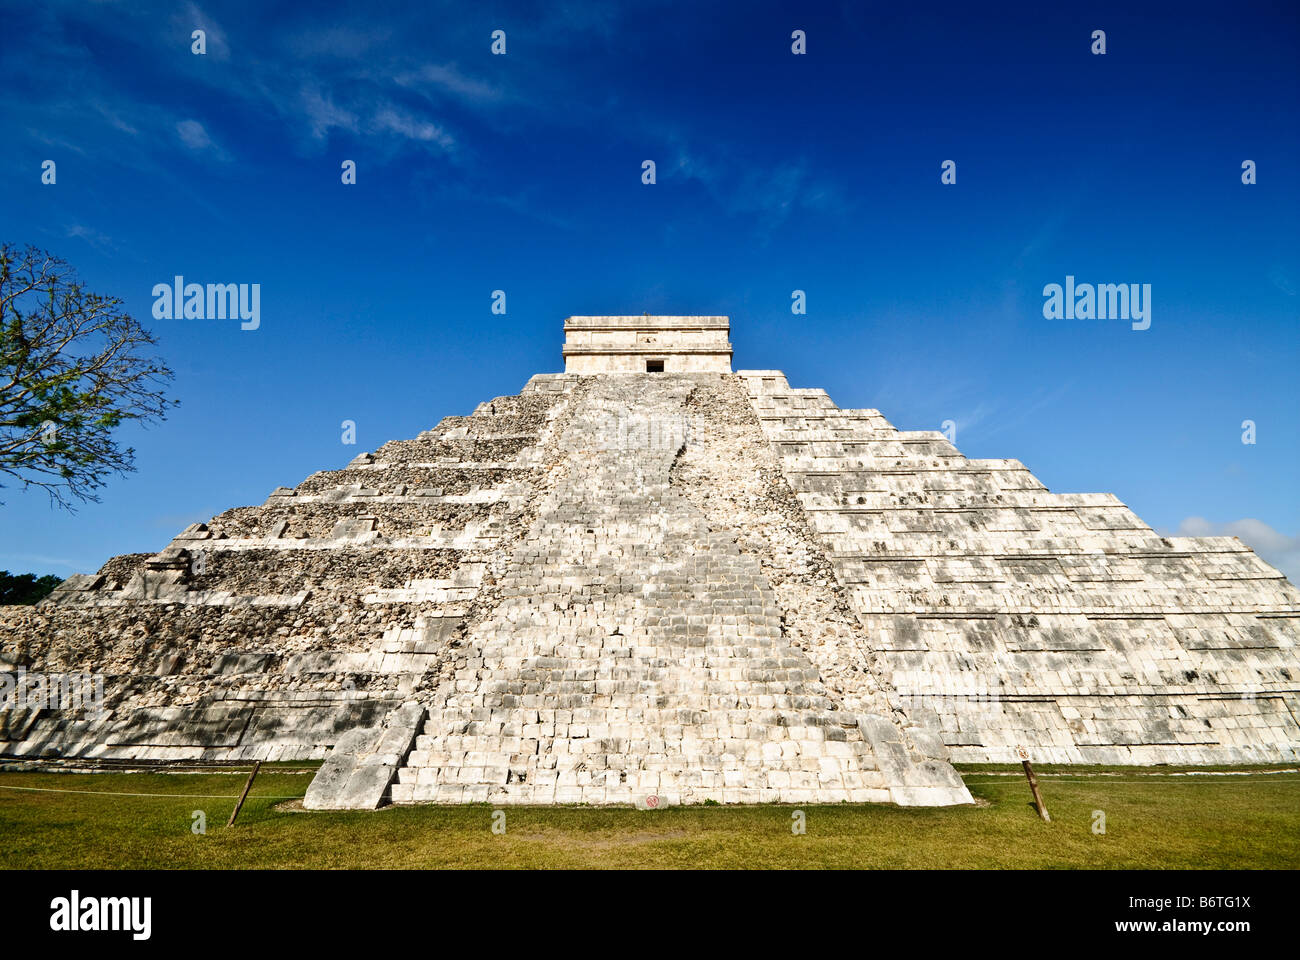 CHICHEN ITZA, Mexico - El Castillo (also known as Temple of Kuklcan) at the ancient Mayan ruins at Chichen Itza, Yucatan, Mexico 081216092634 1915.NEF Stock Photo